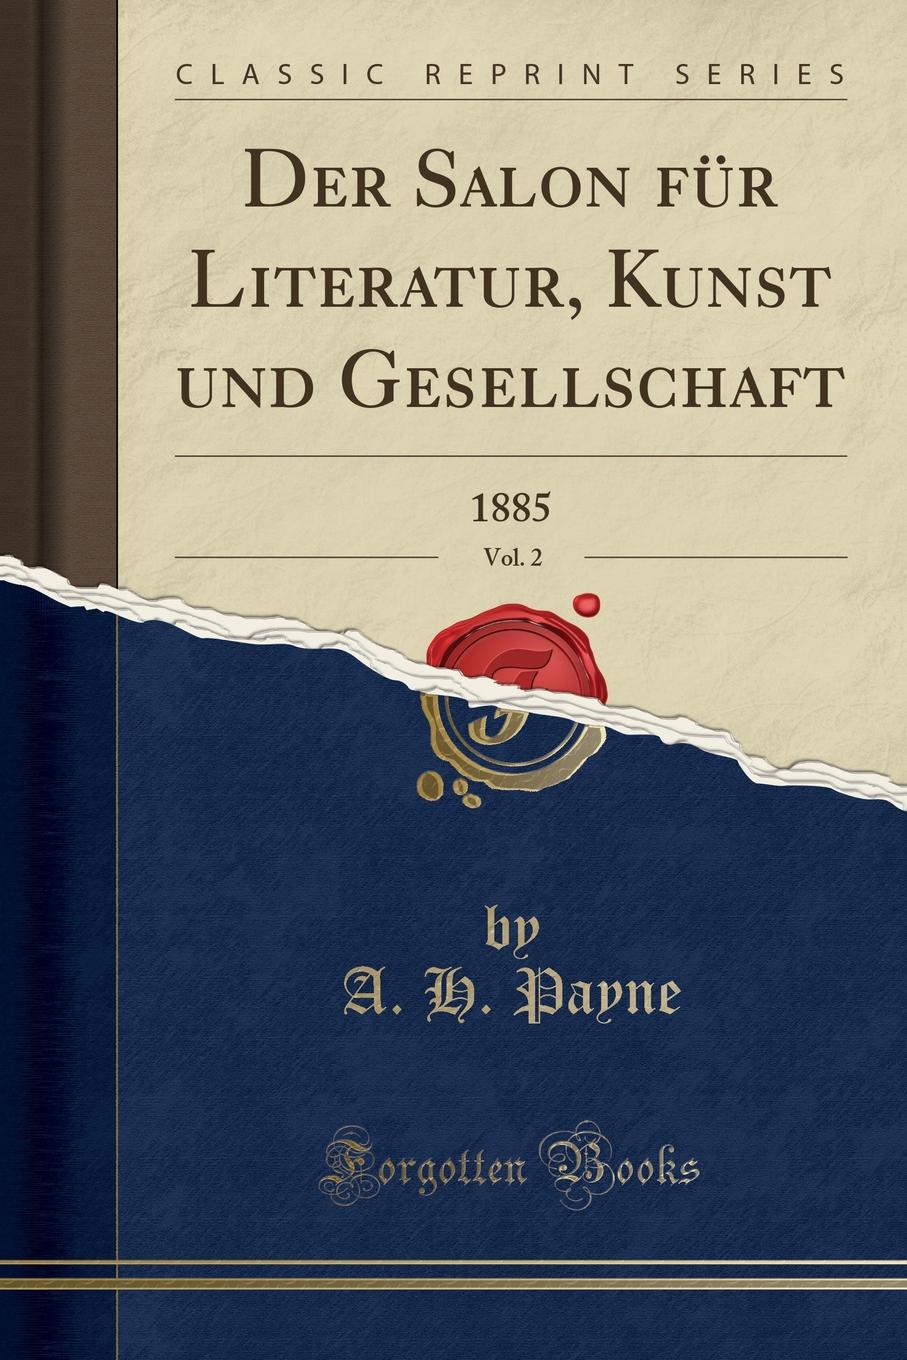 Der Salon fur Literatur, Kunst und Gesellschaft, Vol. 2. 1885 (Classic Reprint)